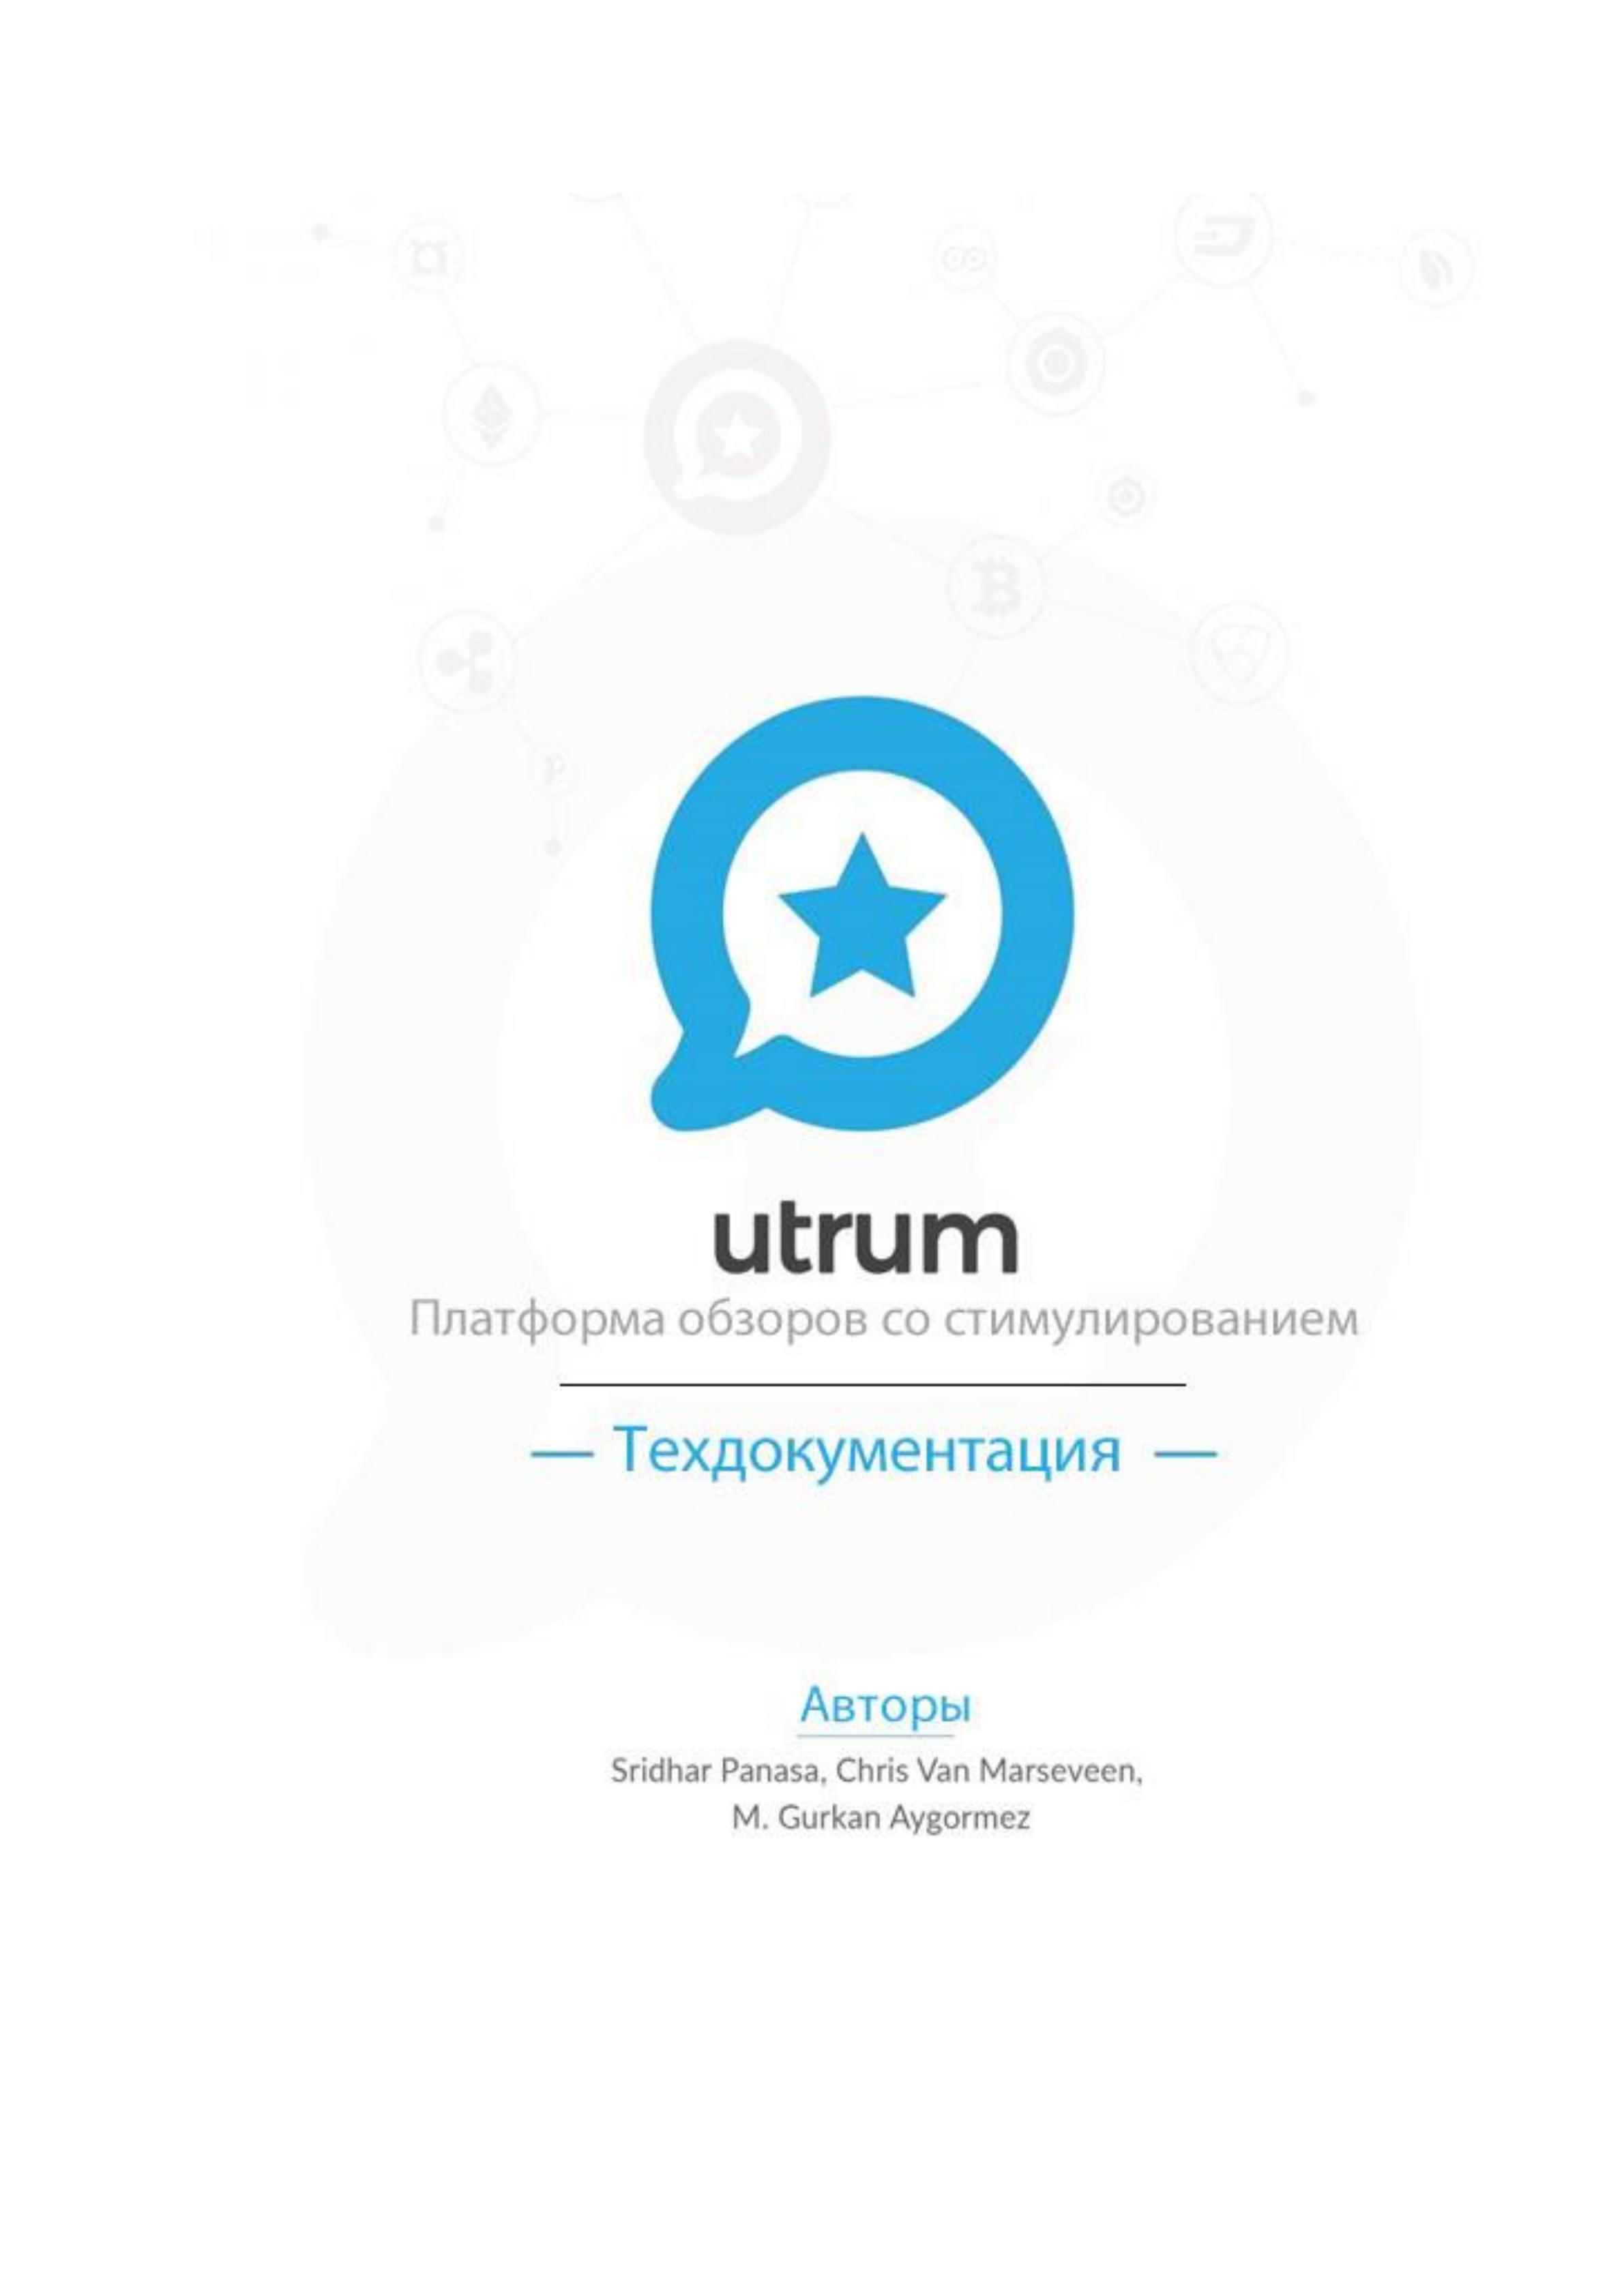 OOT_Utrum-WP-Russian_00.jpg